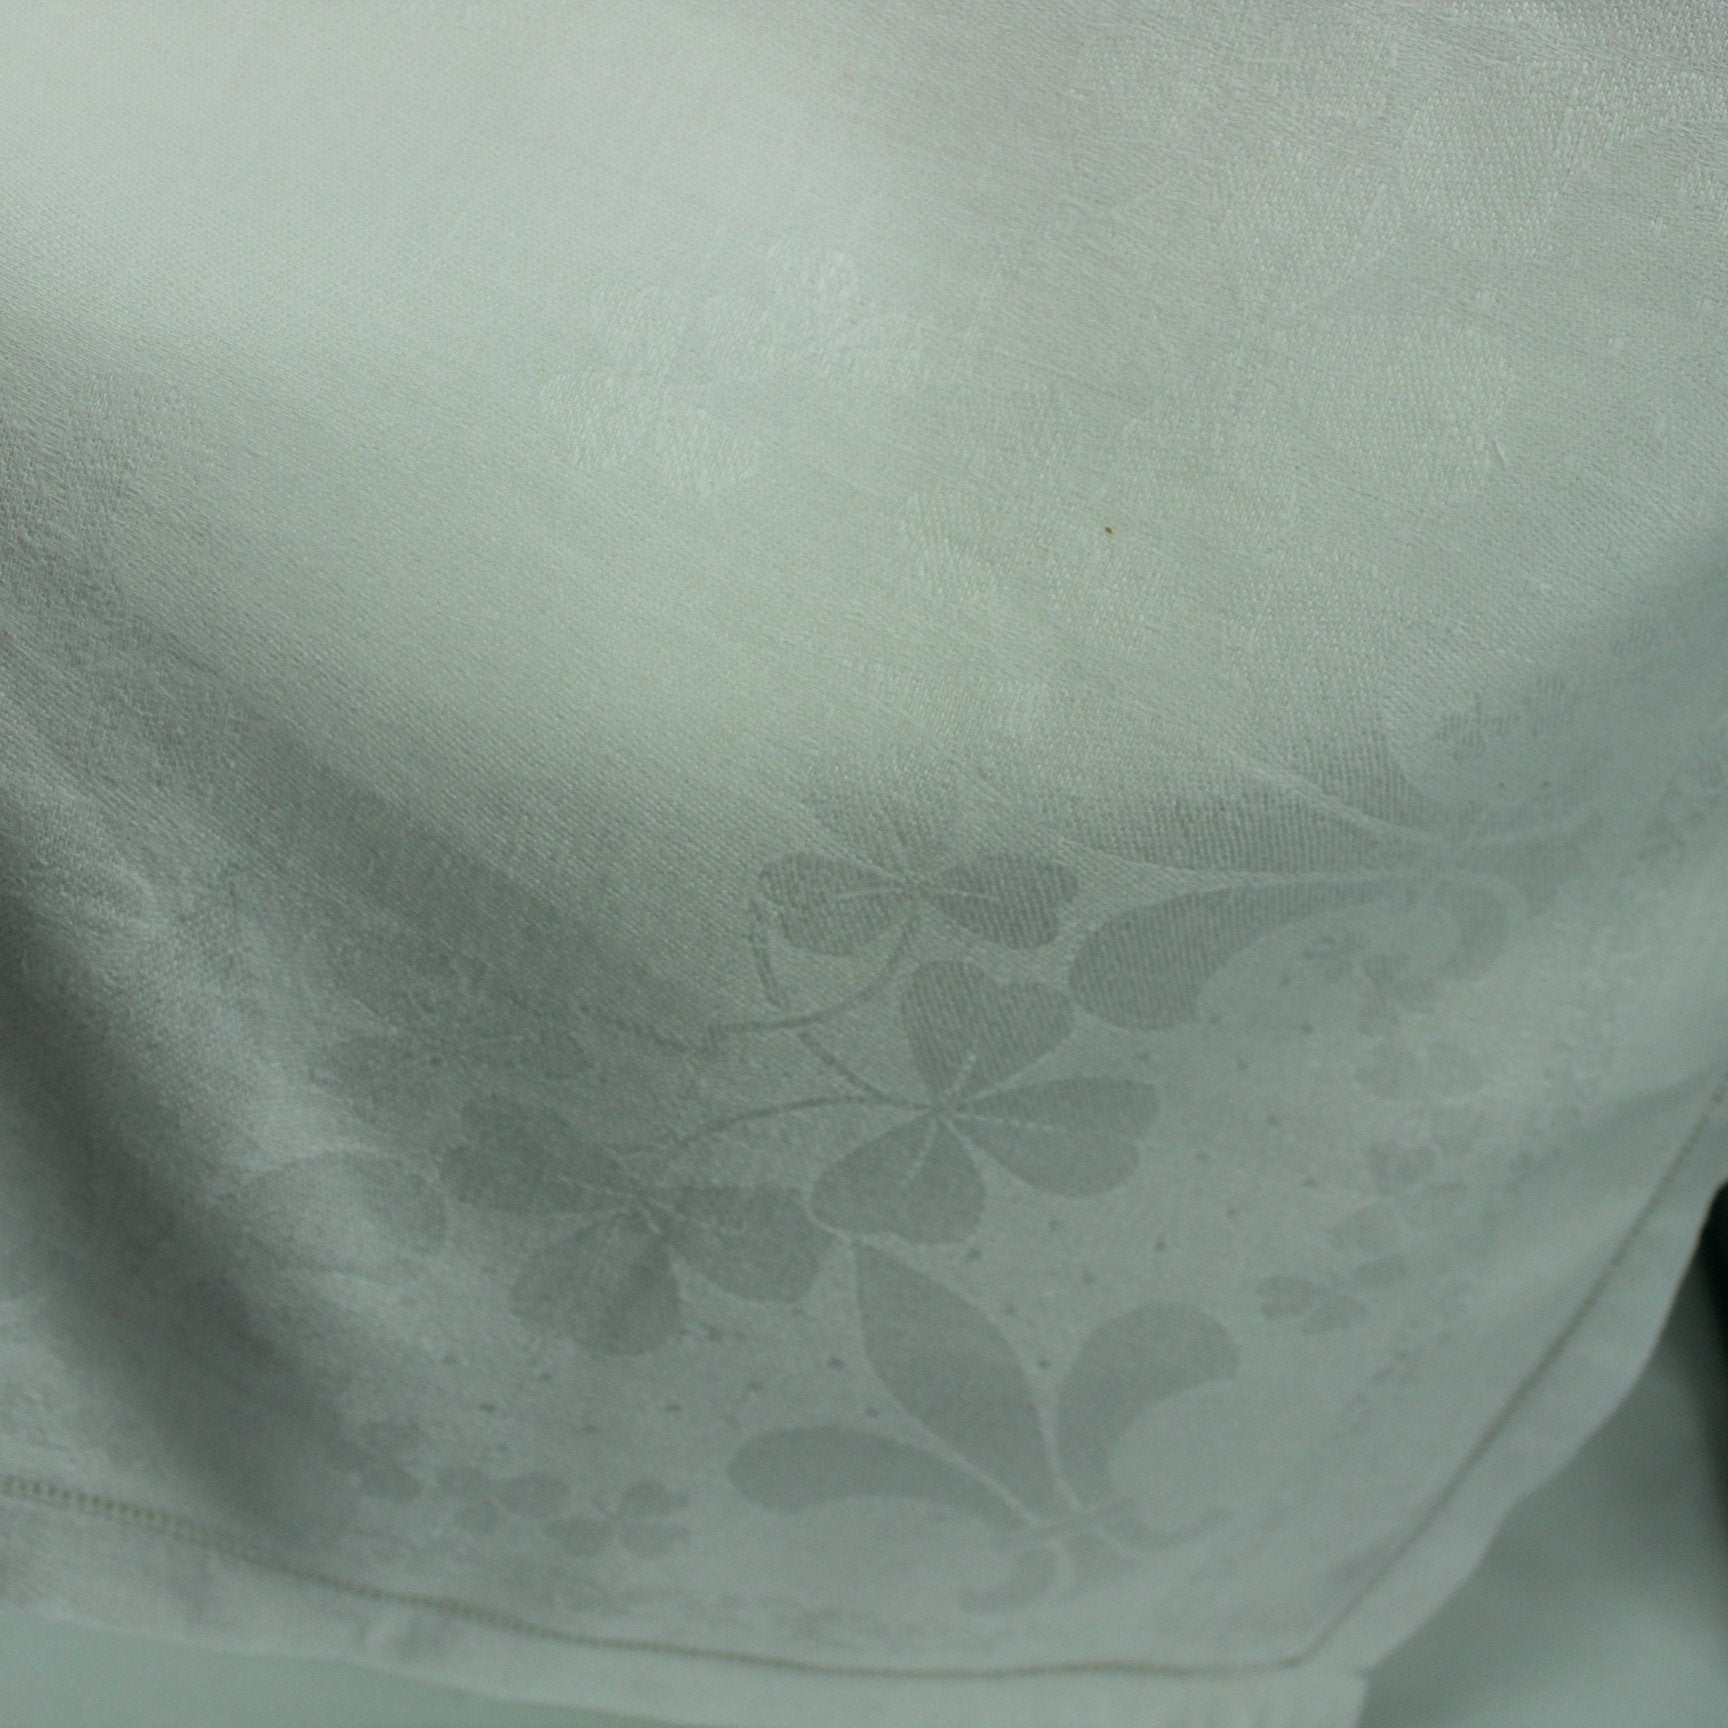 Heavy White Cotton Damask Tablecloth Fleur de Lis and Clover Design 55" X 66 closeup subtle design